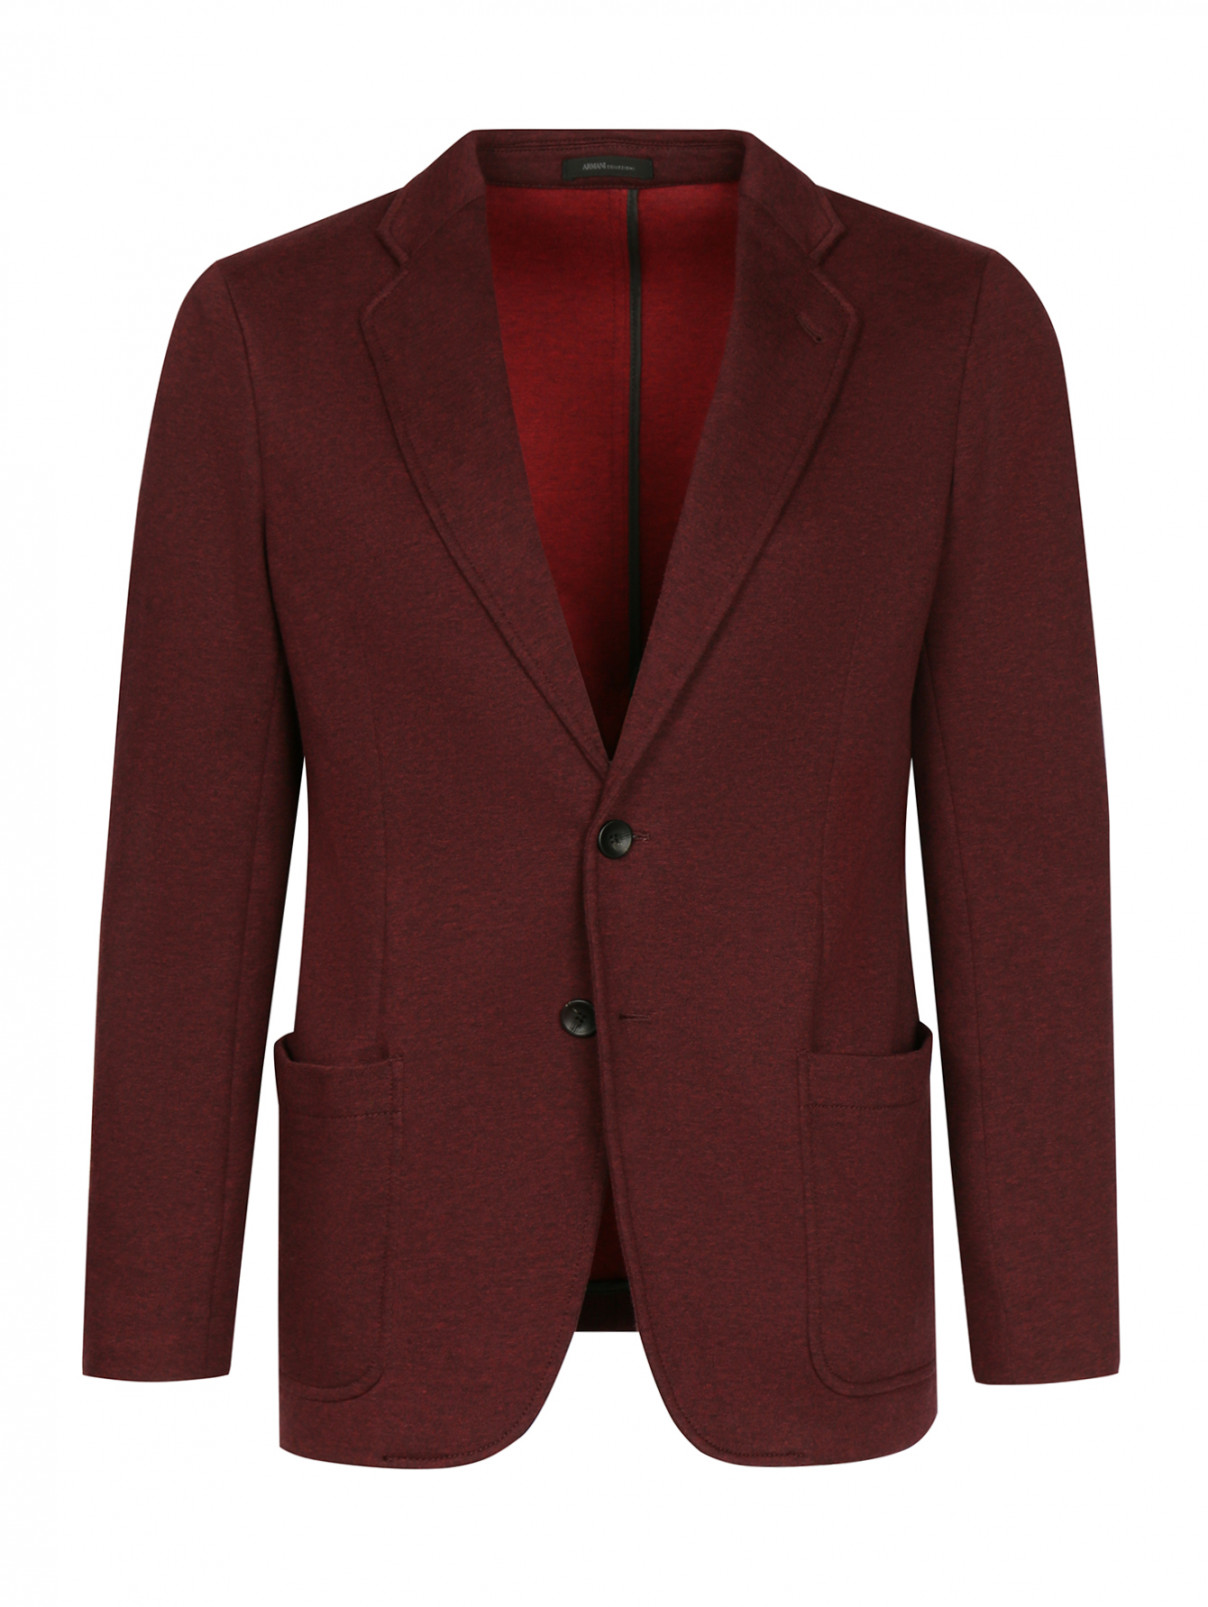 Пиджак однобортный из хлопка Armani Collezioni  –  Общий вид  – Цвет:  Красный